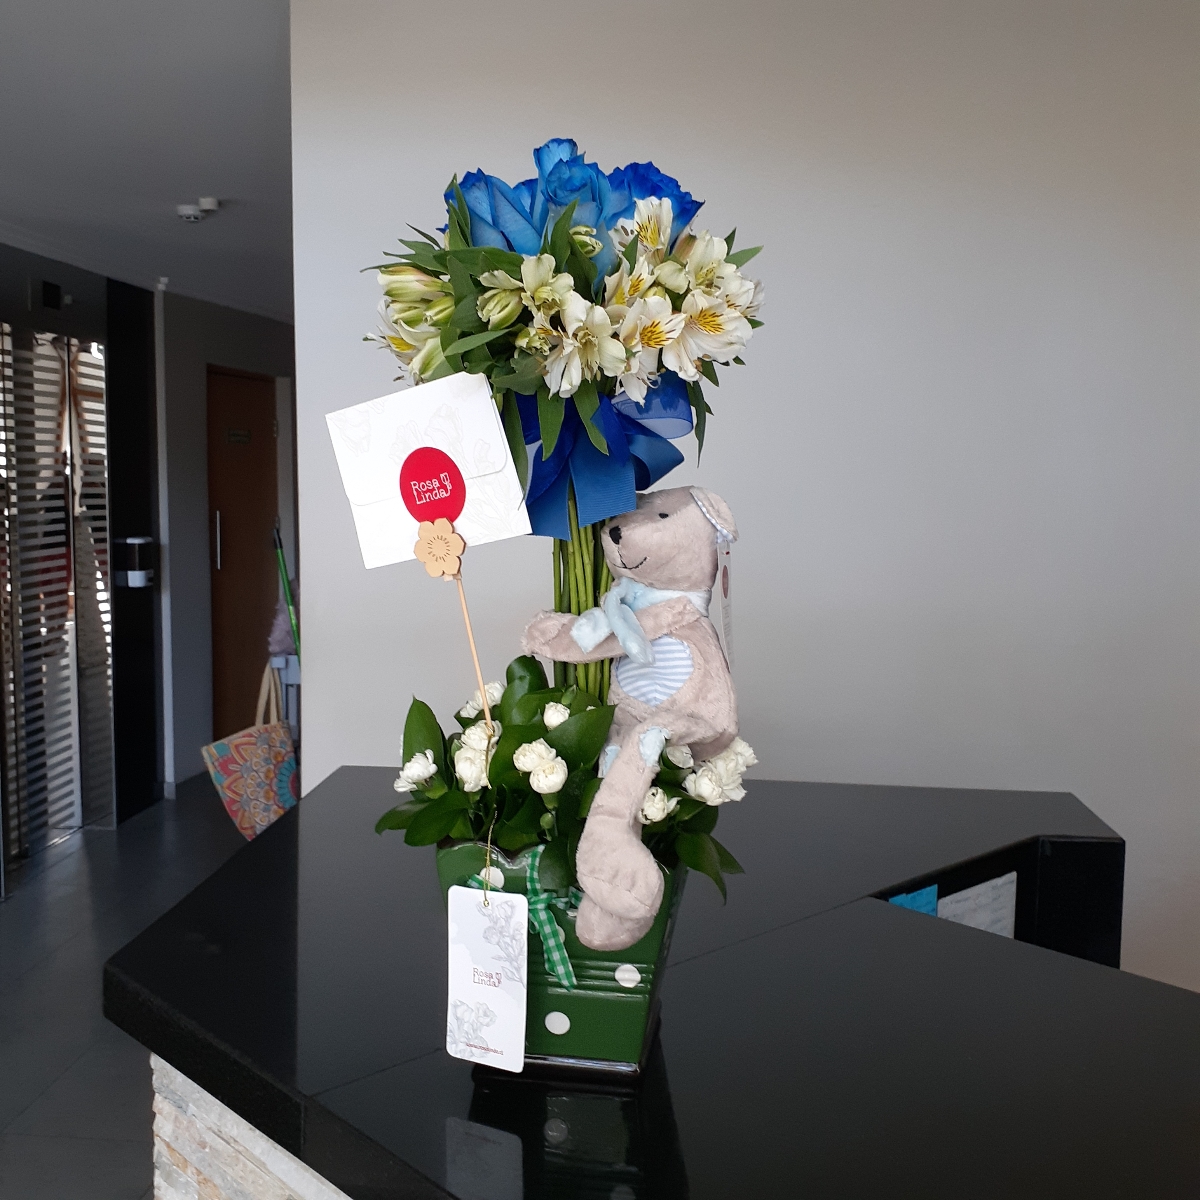 Arbolito con peluche Osito - Arreglo floral con rosas azules, astromelias y maules - Pedido 253321